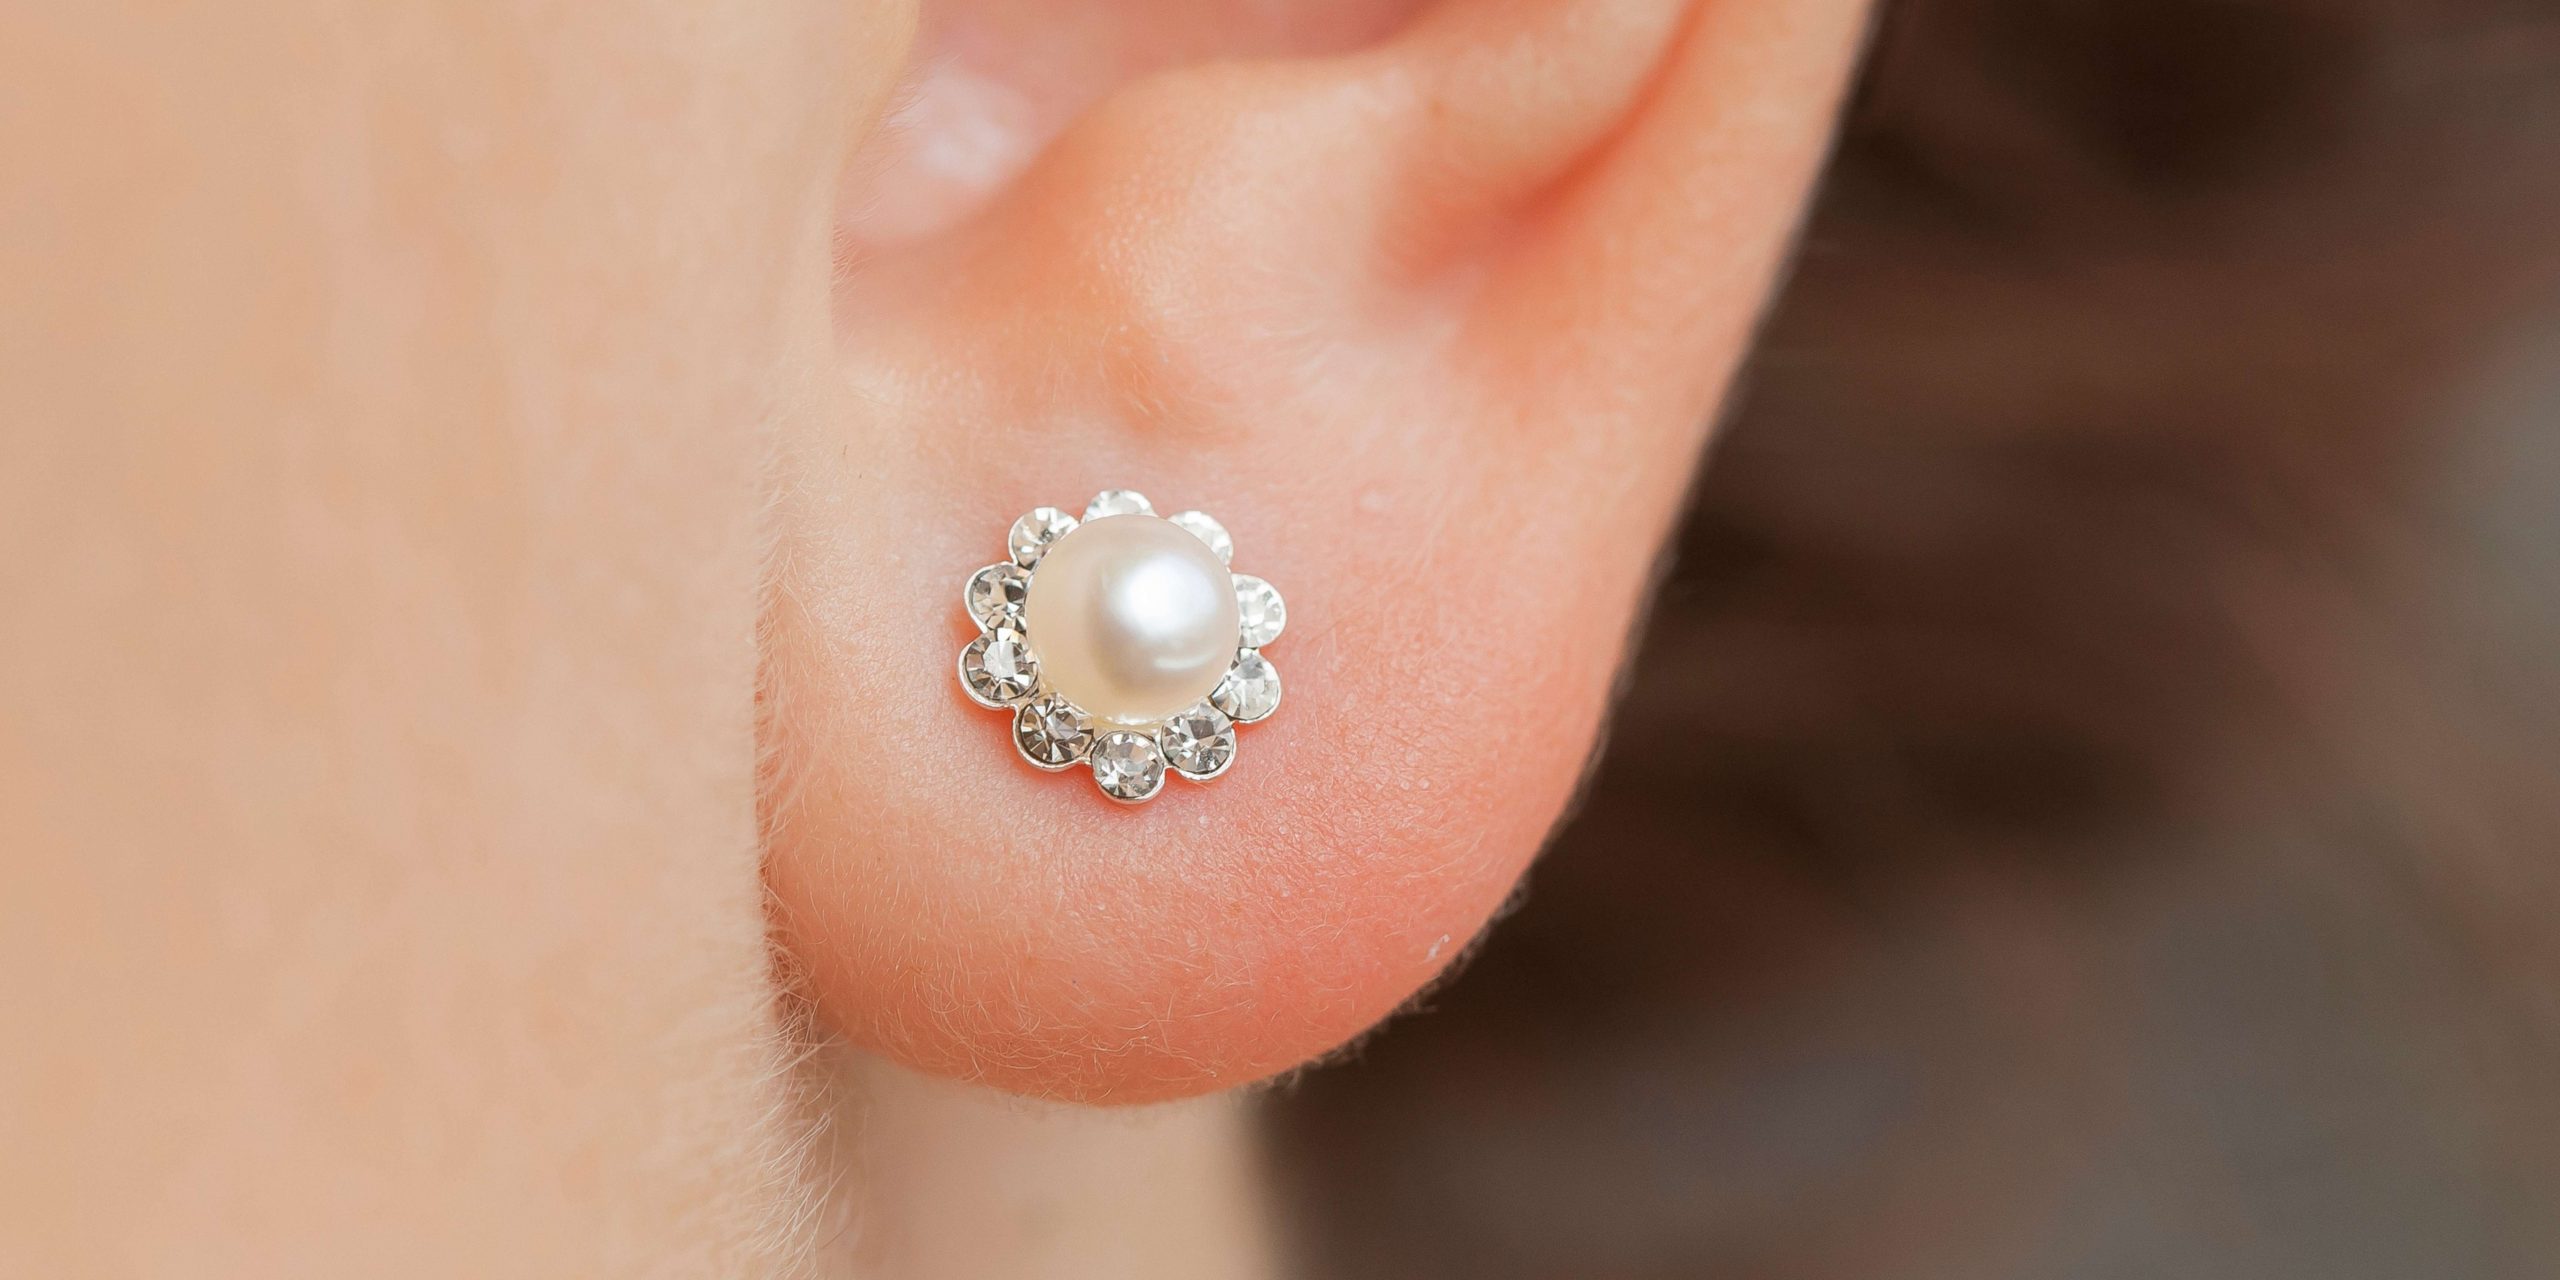 Jewelry Lovers – Small Earrings